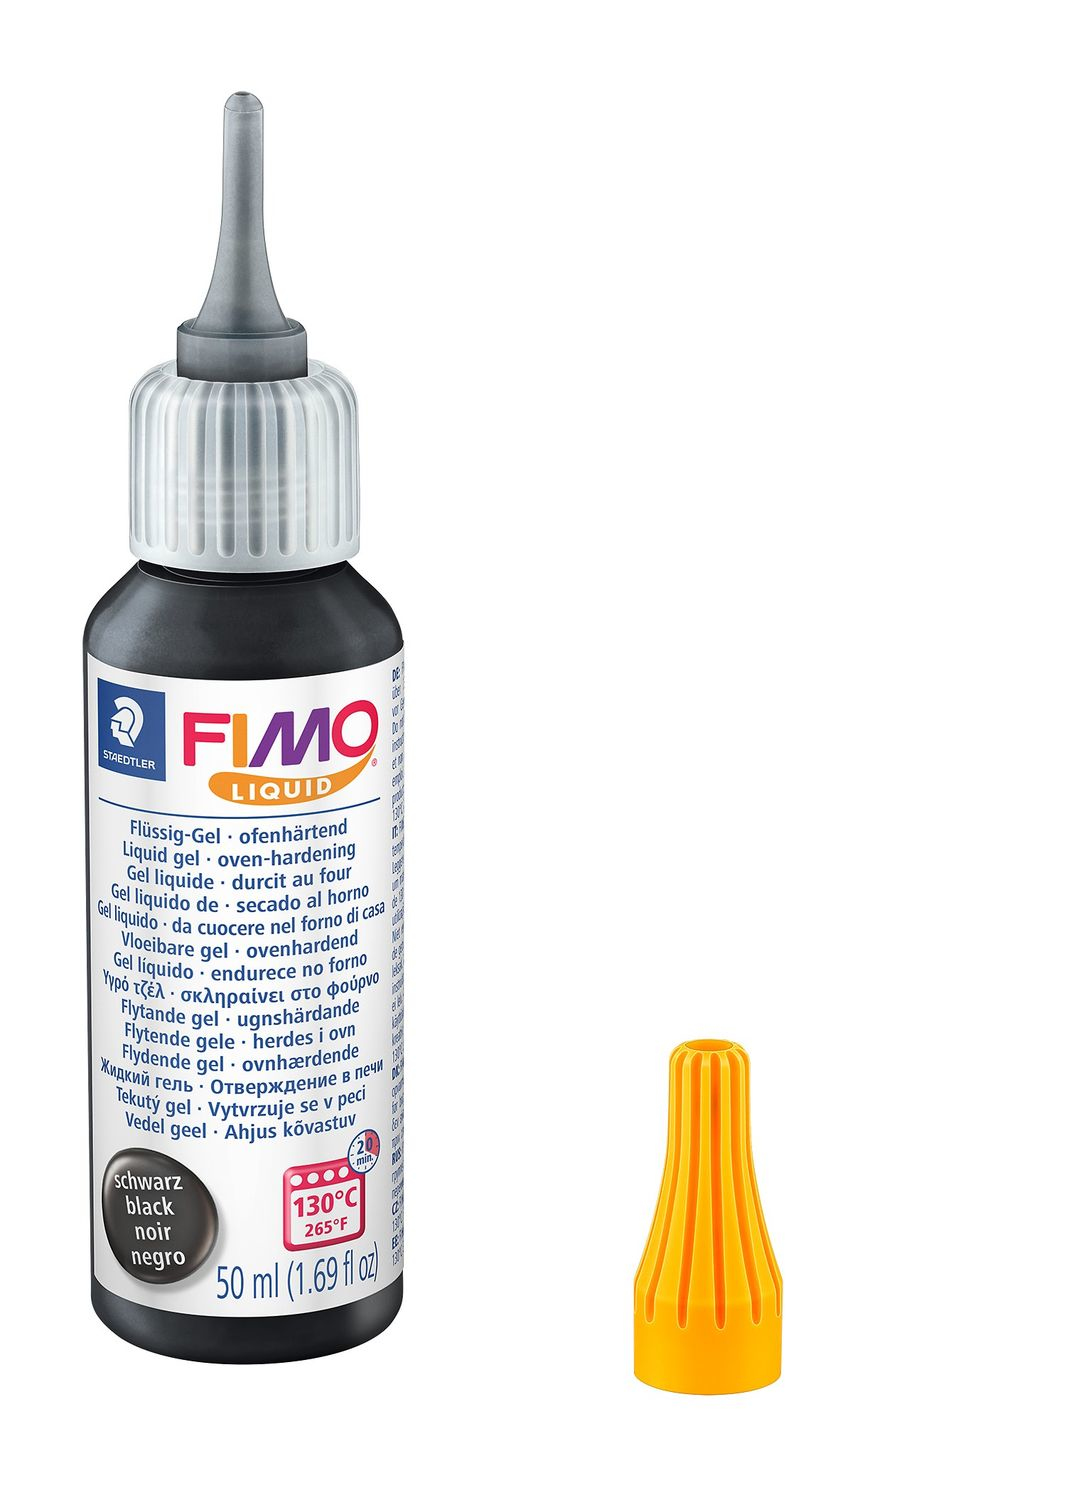 STAEDTLER FIMO 8050 - Dekorier-Gel - Schwarz - Erwachsene - 1 Stück(e) - 130 °C - 20 min